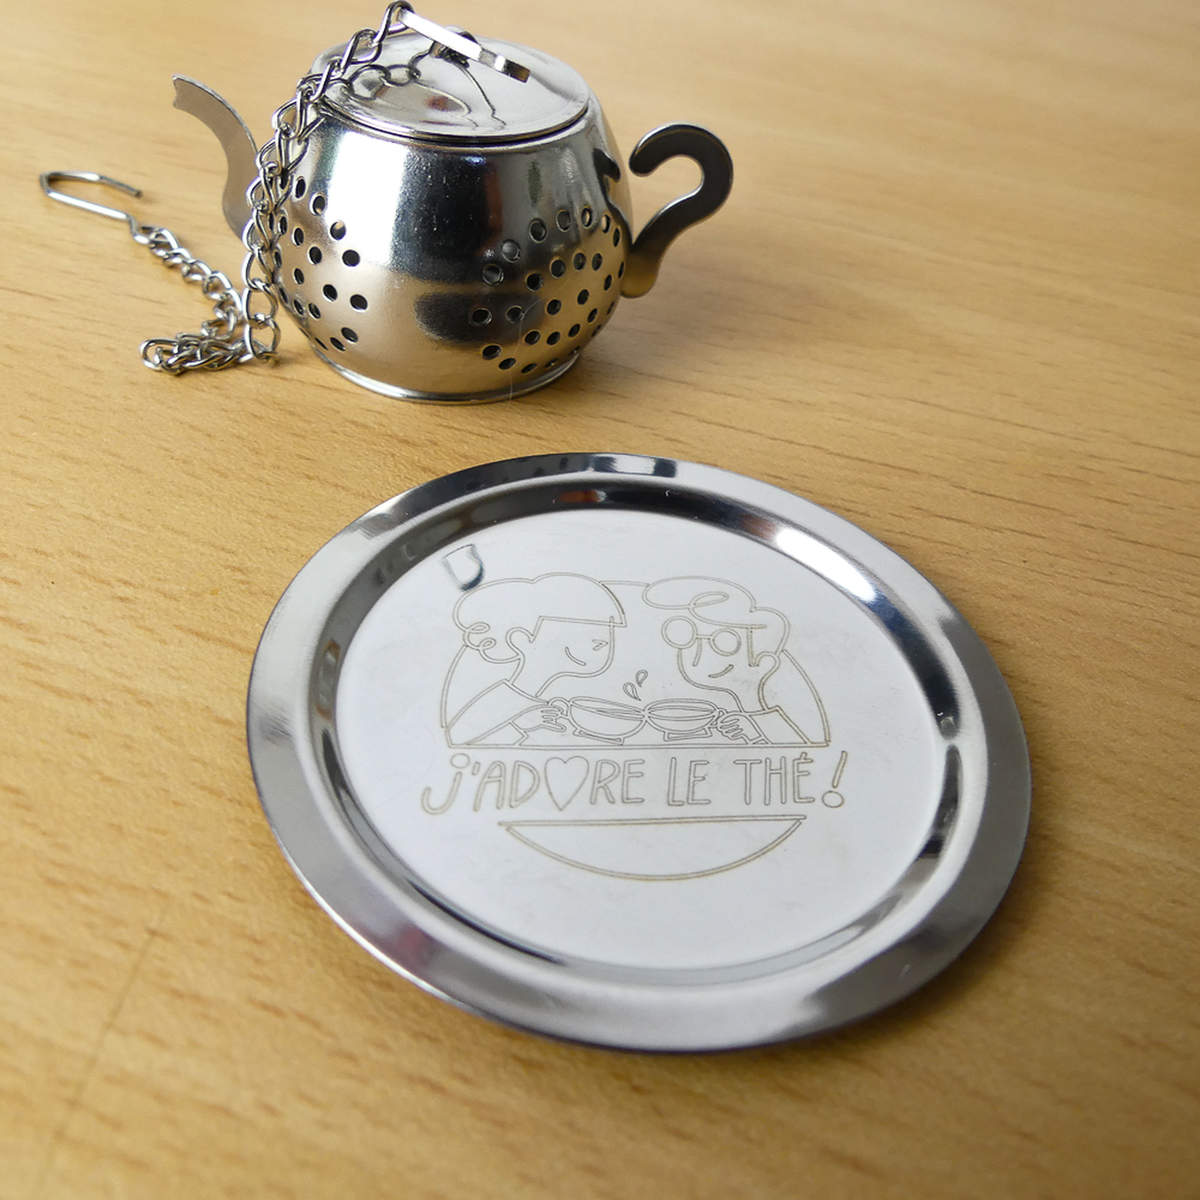 Achat Infuseur à thé original mini théière en gros